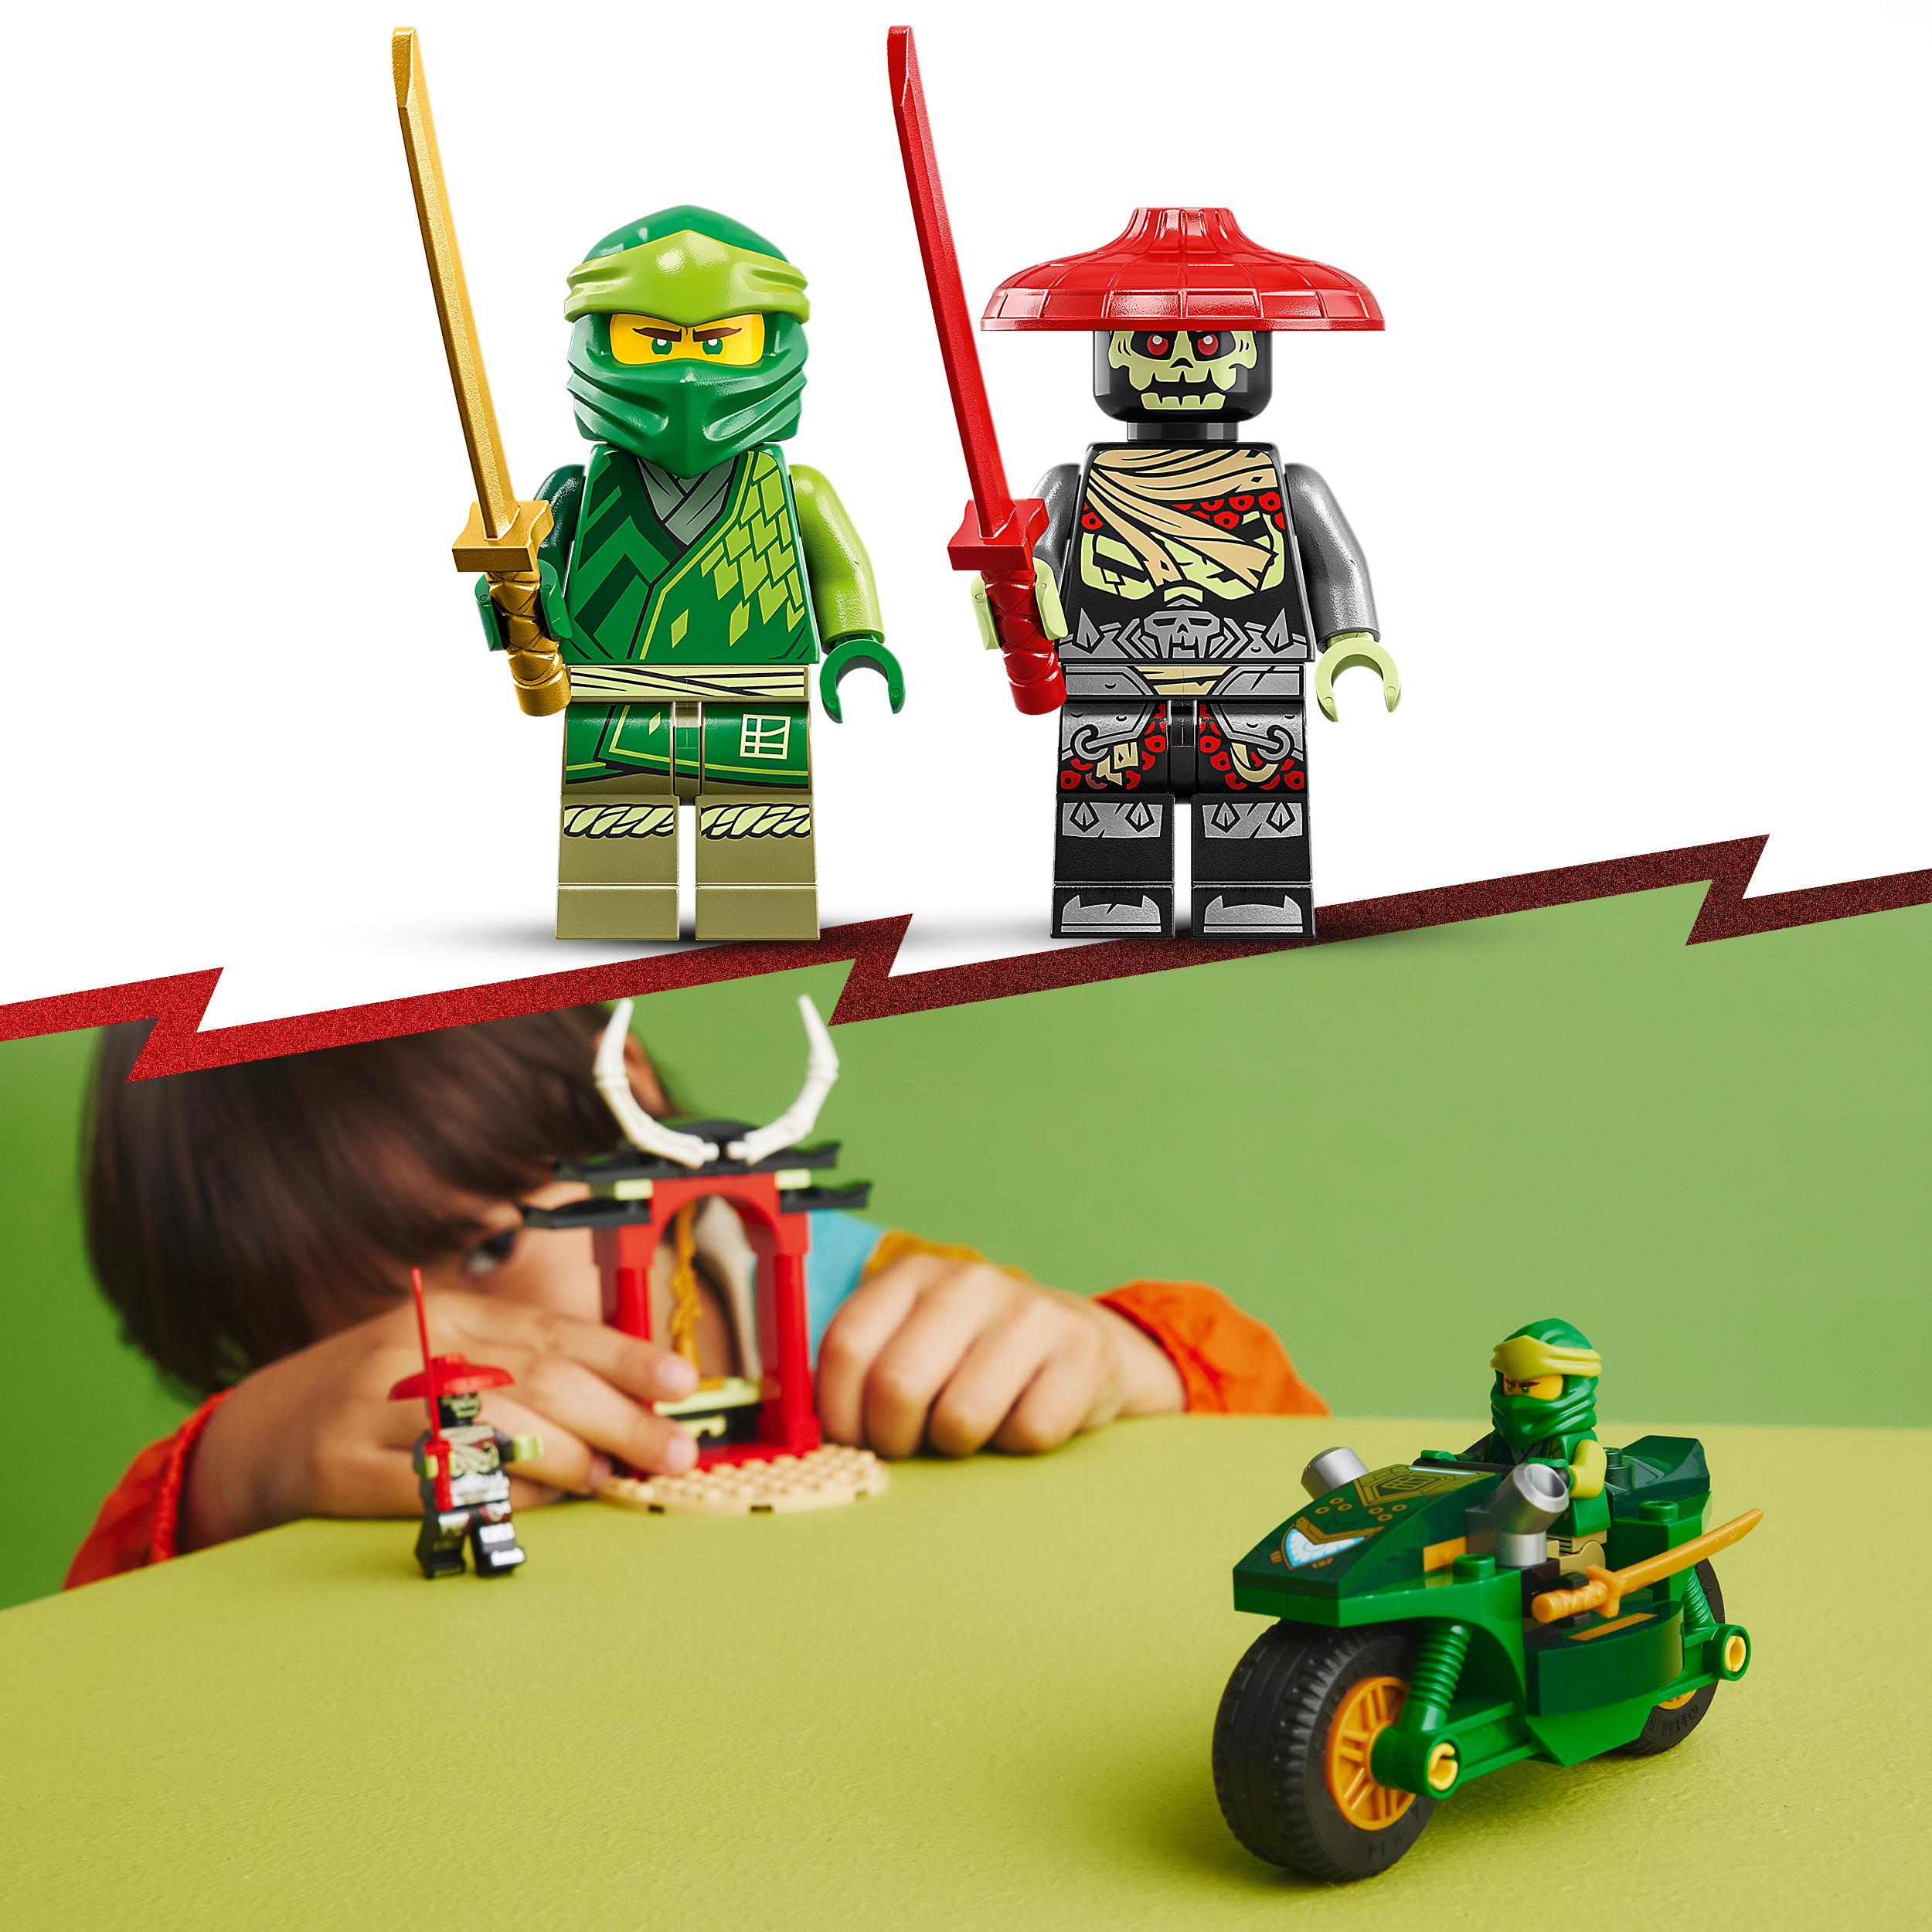 Bausatz, LEGO Ninja-Motorrad Mehrfarbig NINJAGO 71788 Lloyds